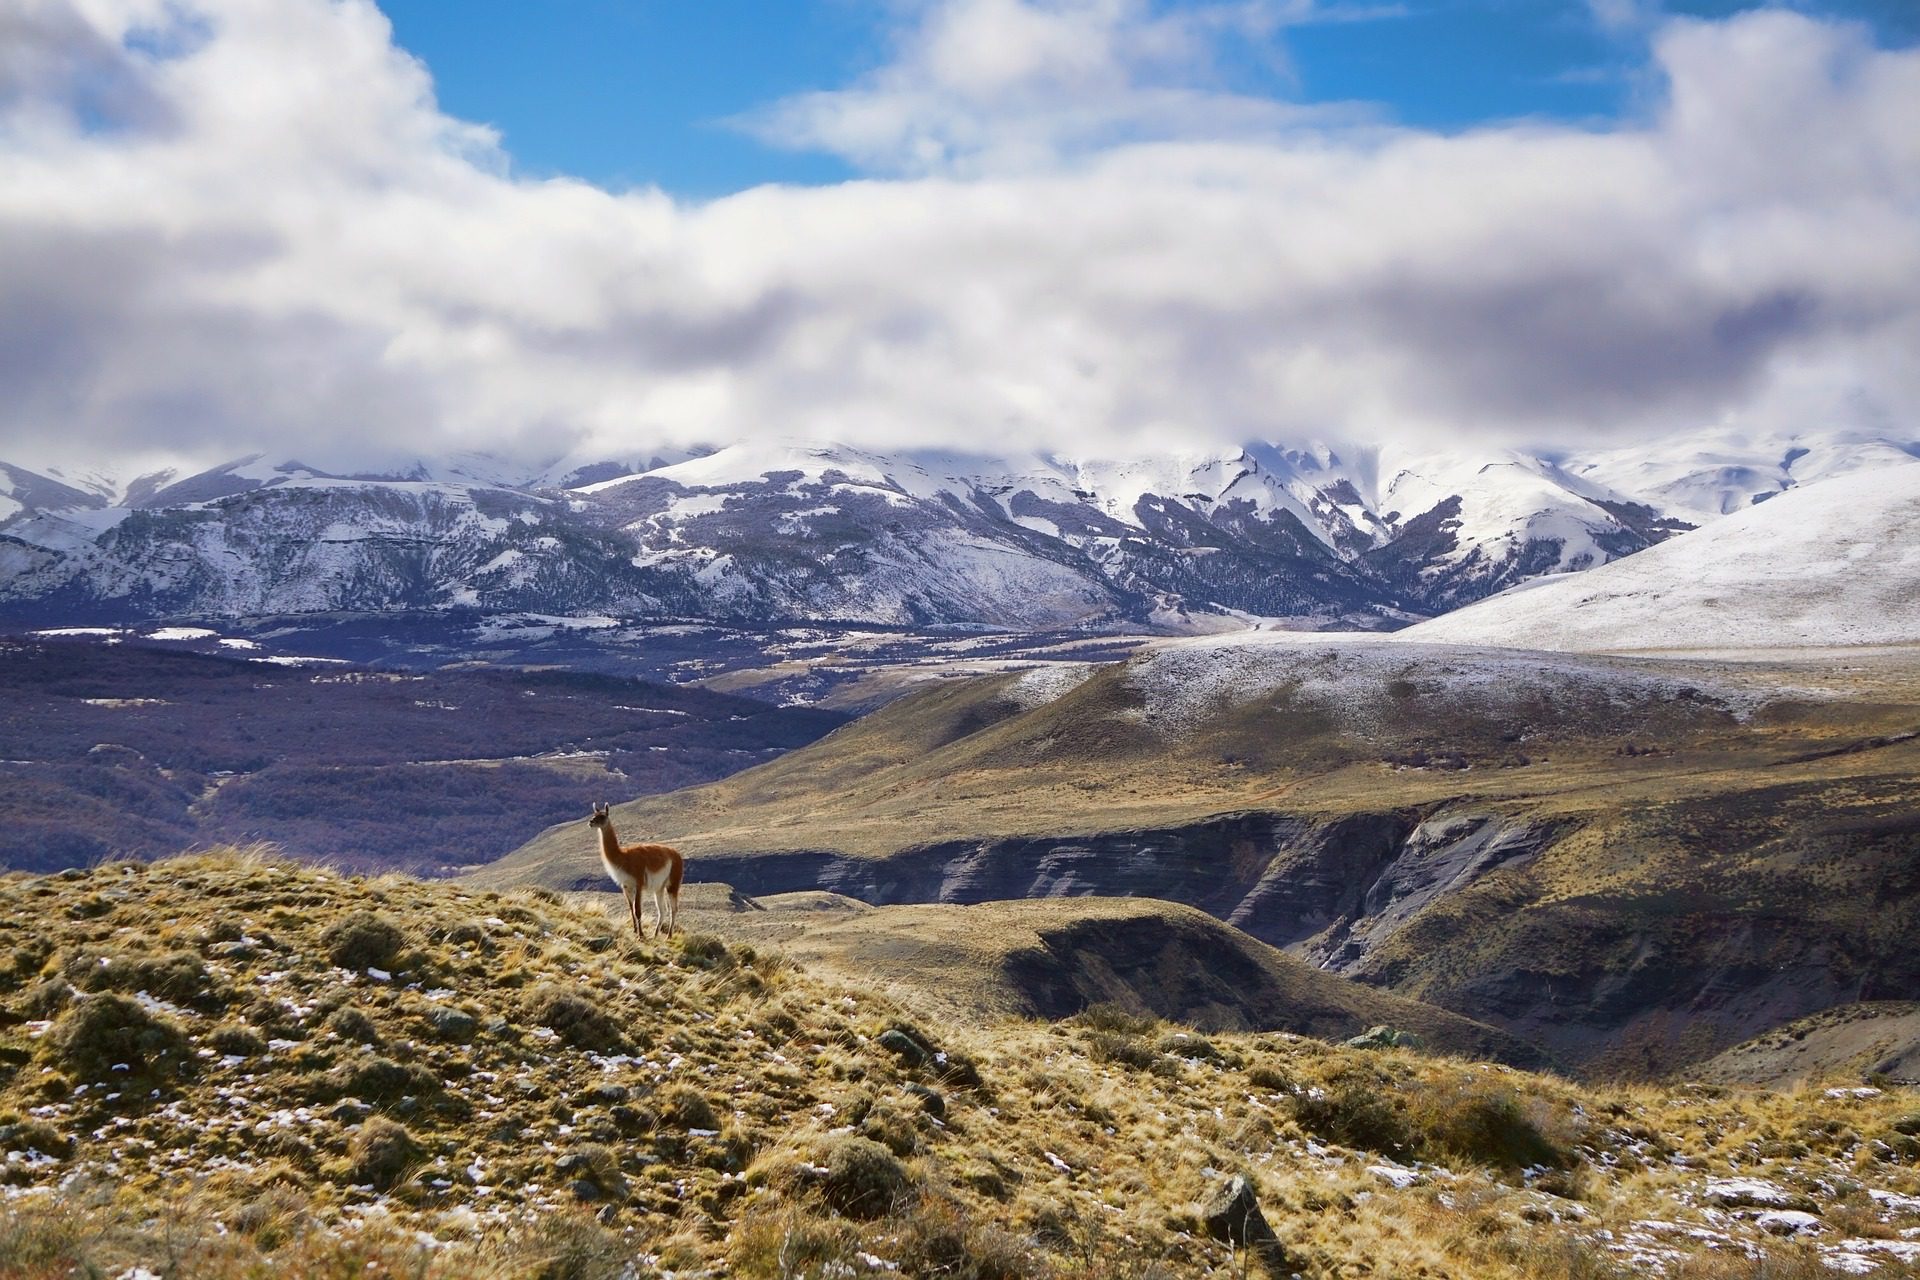 Quels sont les atouts qu’offre un voyage en Patagonie ?